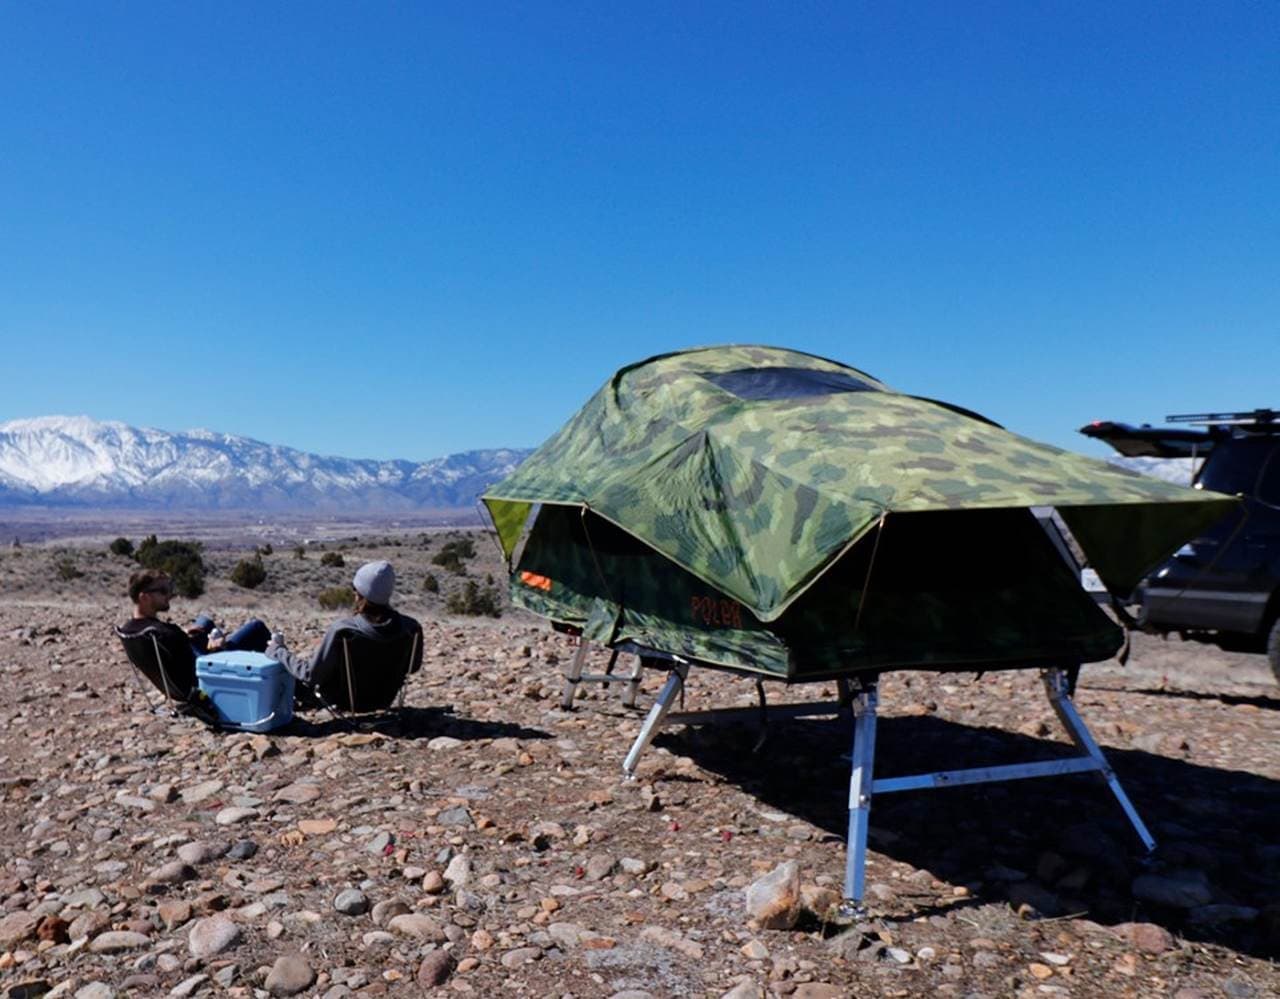 ルーフトップテントを地上設営可能にするフレーム「Hitch Tent」